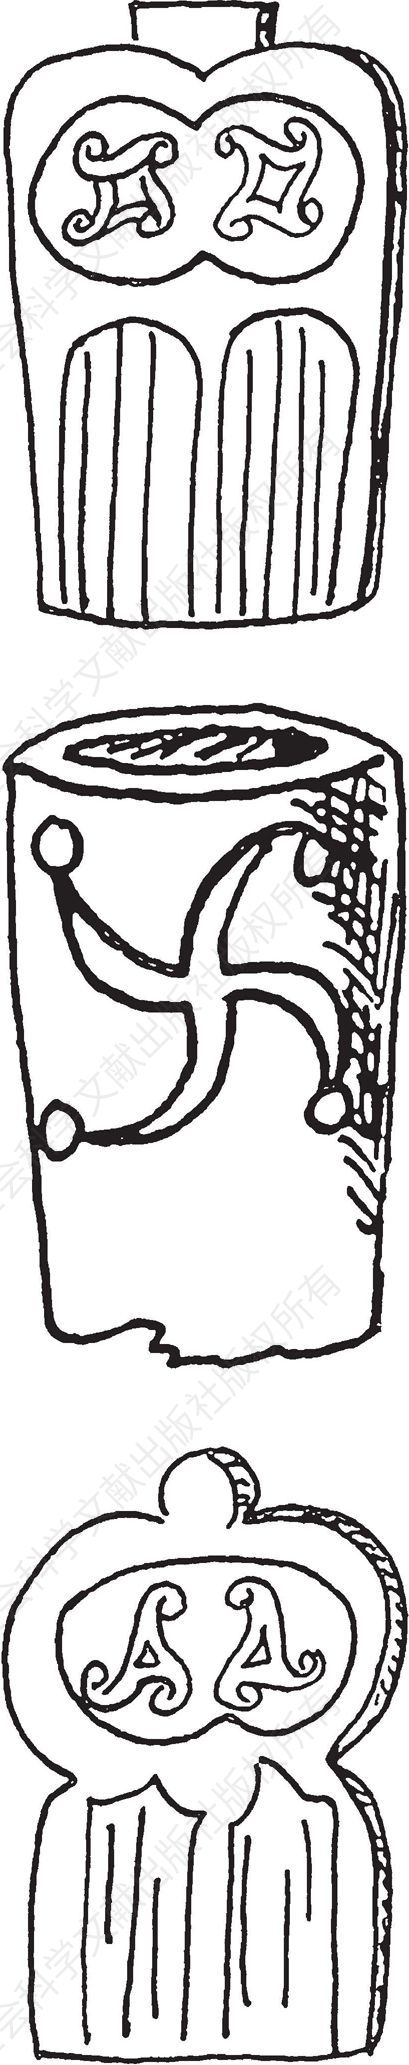 维京人使用的剑柄上刻有不同变体的万字符号